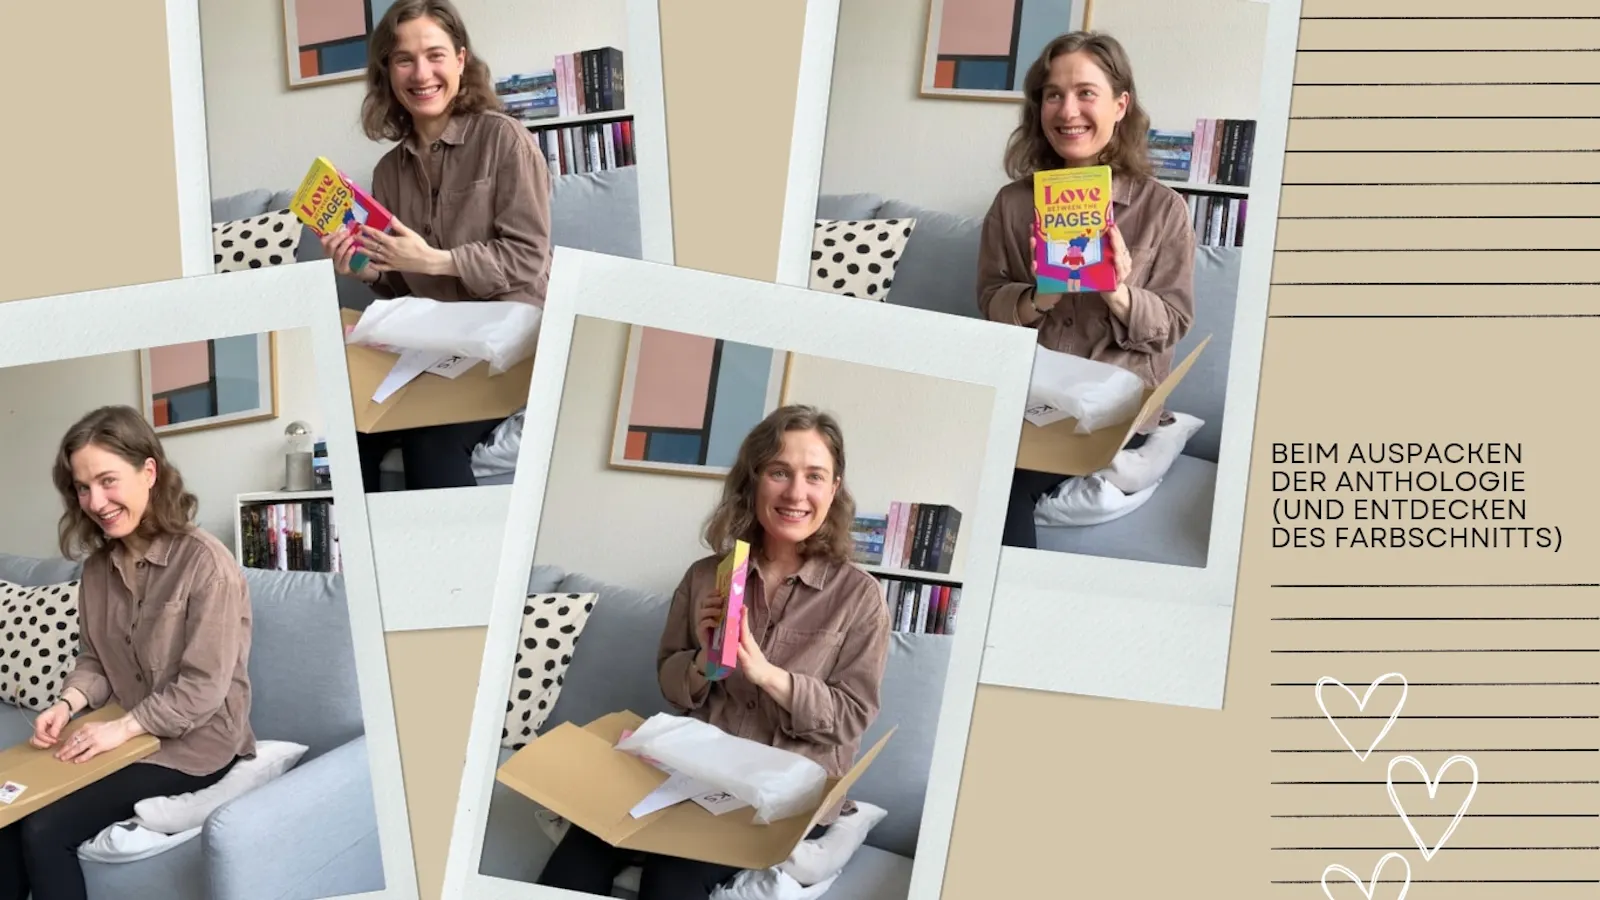 Eine Collage von Fotos der Autorin beim Auspacken der Anthologie "Love Between The Pages". Das Taschenbuch ist in Geld, Magenta und Blau gehalten. Es hat seitlich einen Farbschnitt in den Farben des Covers. Die Autorin grinst glücklich während sie es betrachtet und in den Händen hält.

Fotos: Jessica Halermöller (BoD)